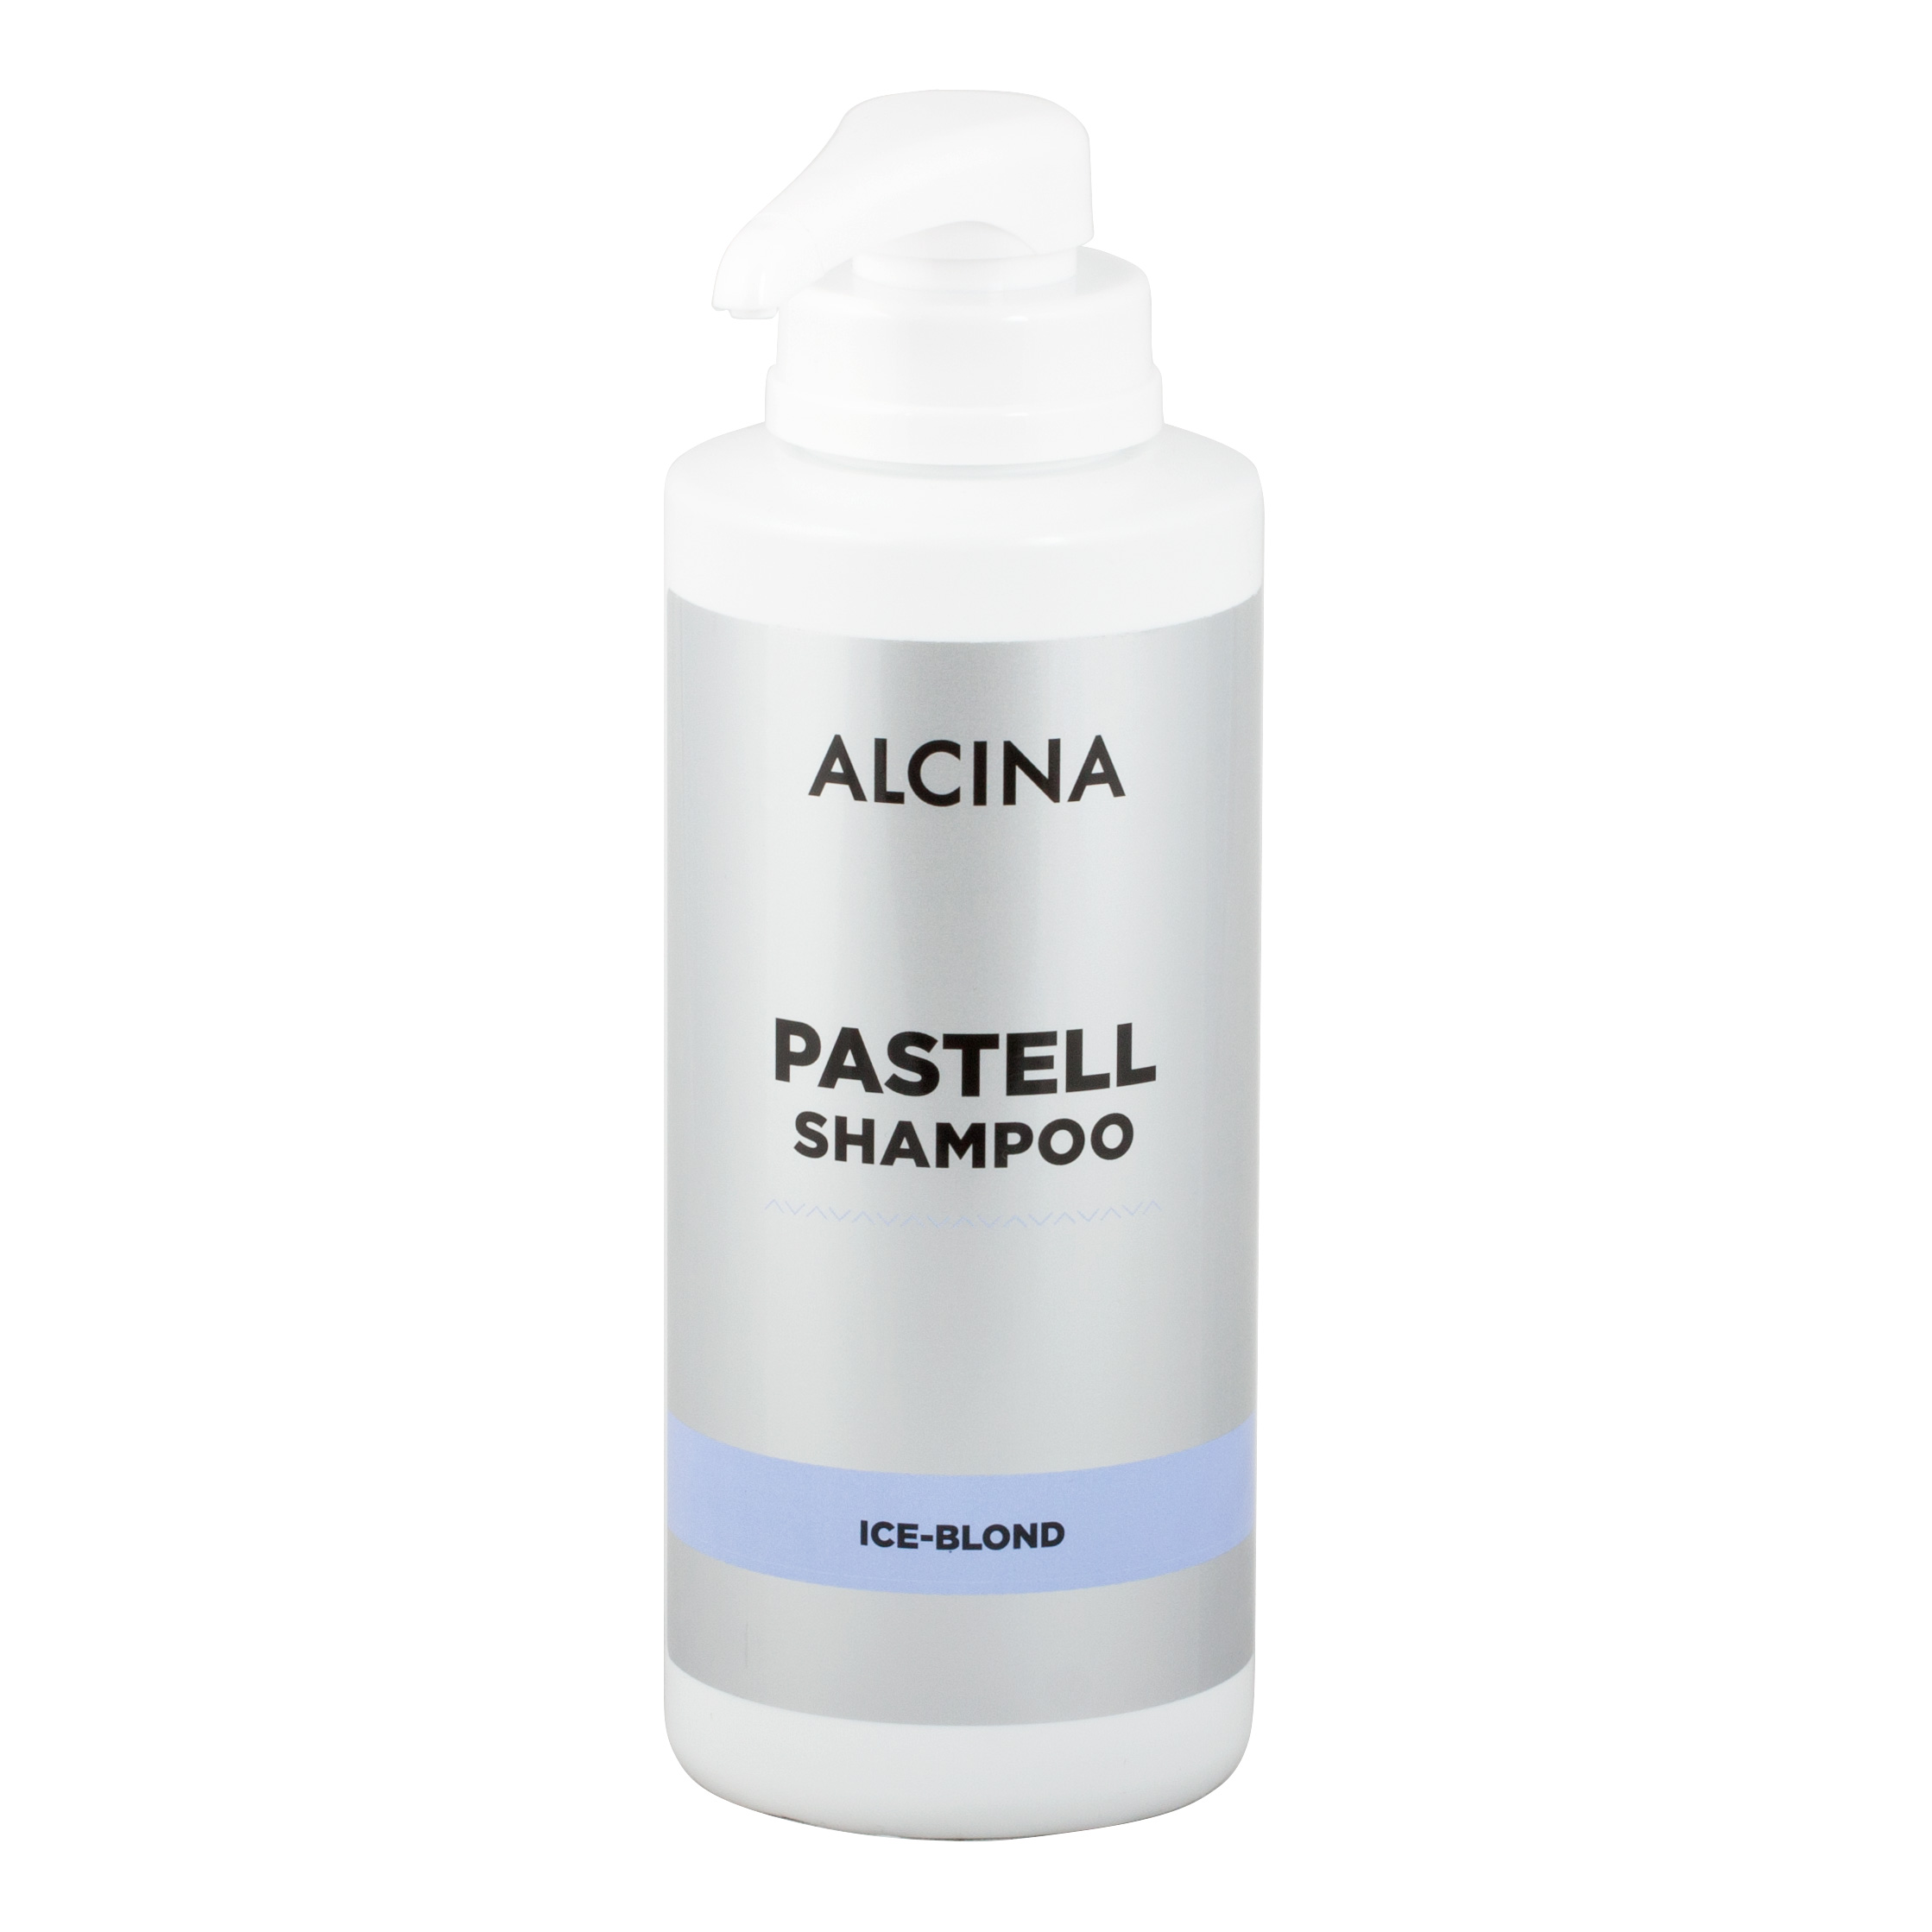 Alcina - Pastell šampon Ice-Blond kabinetní balení